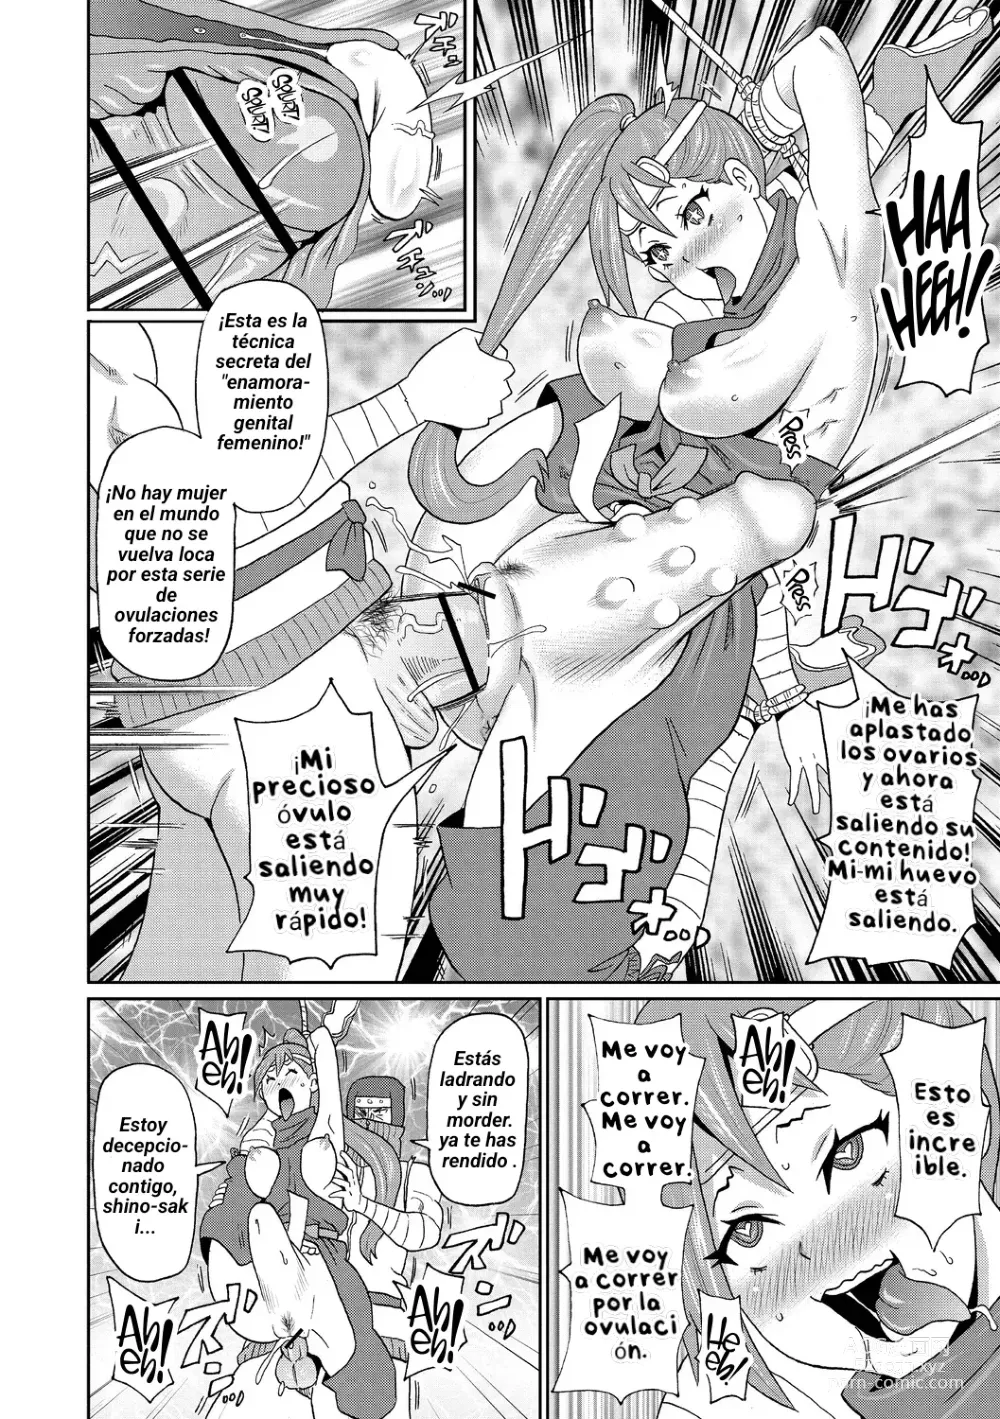 Page 16 of manga Shinmai Kunoichi Shinozaki-san.